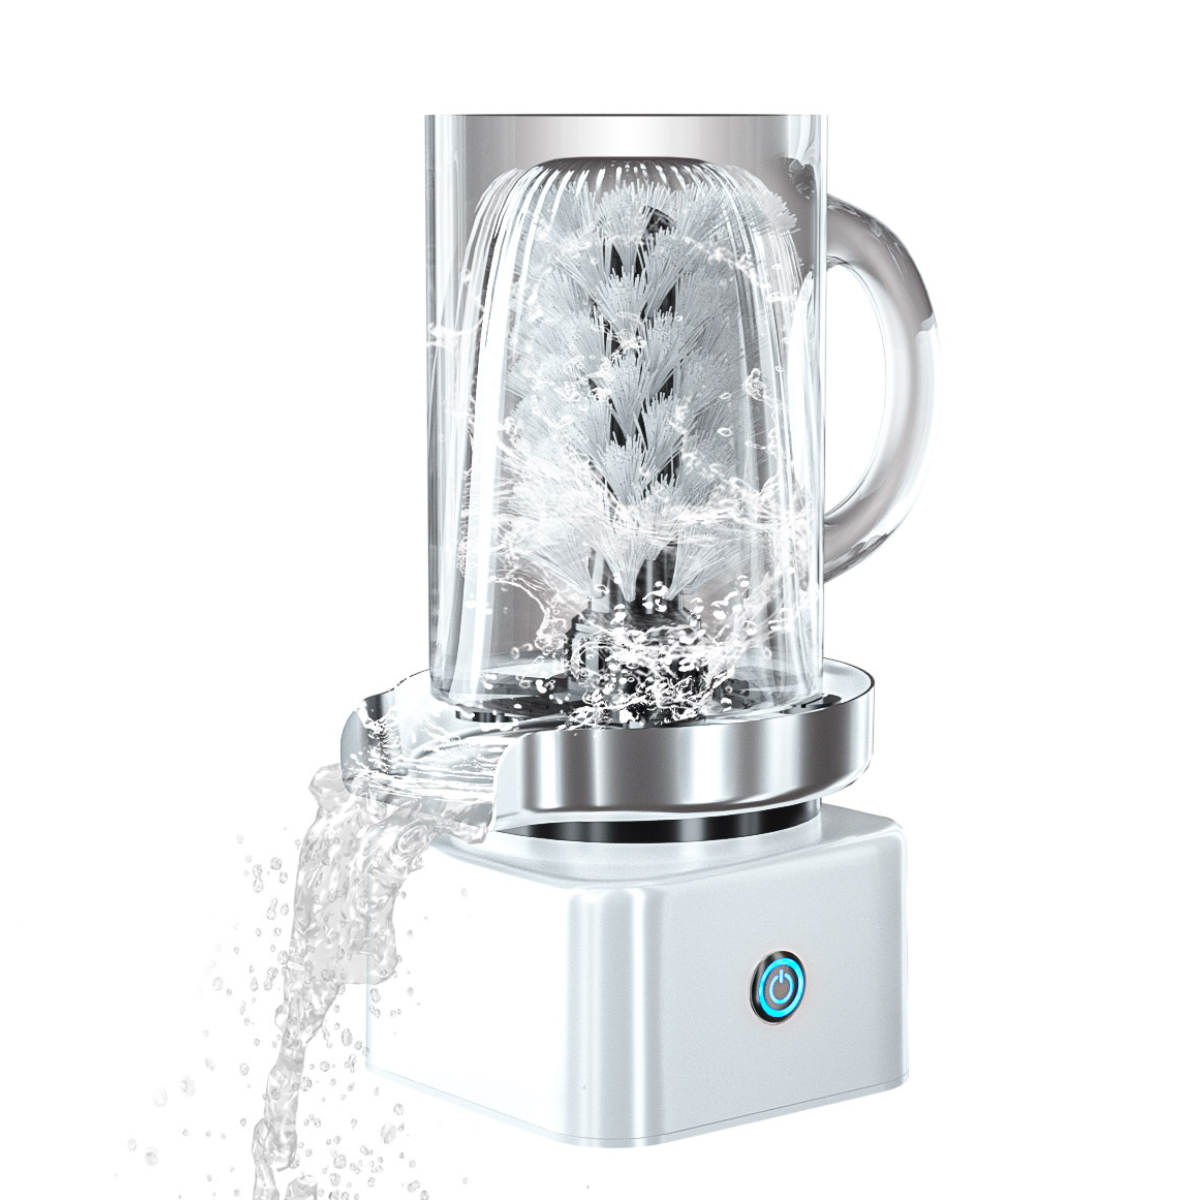 UWOT Tassenwaschmaschine: Automatische Reinigung, Drücken Tiefenreinigung Nylonborsten, Reinigungsbürste Weiß Drehen, und